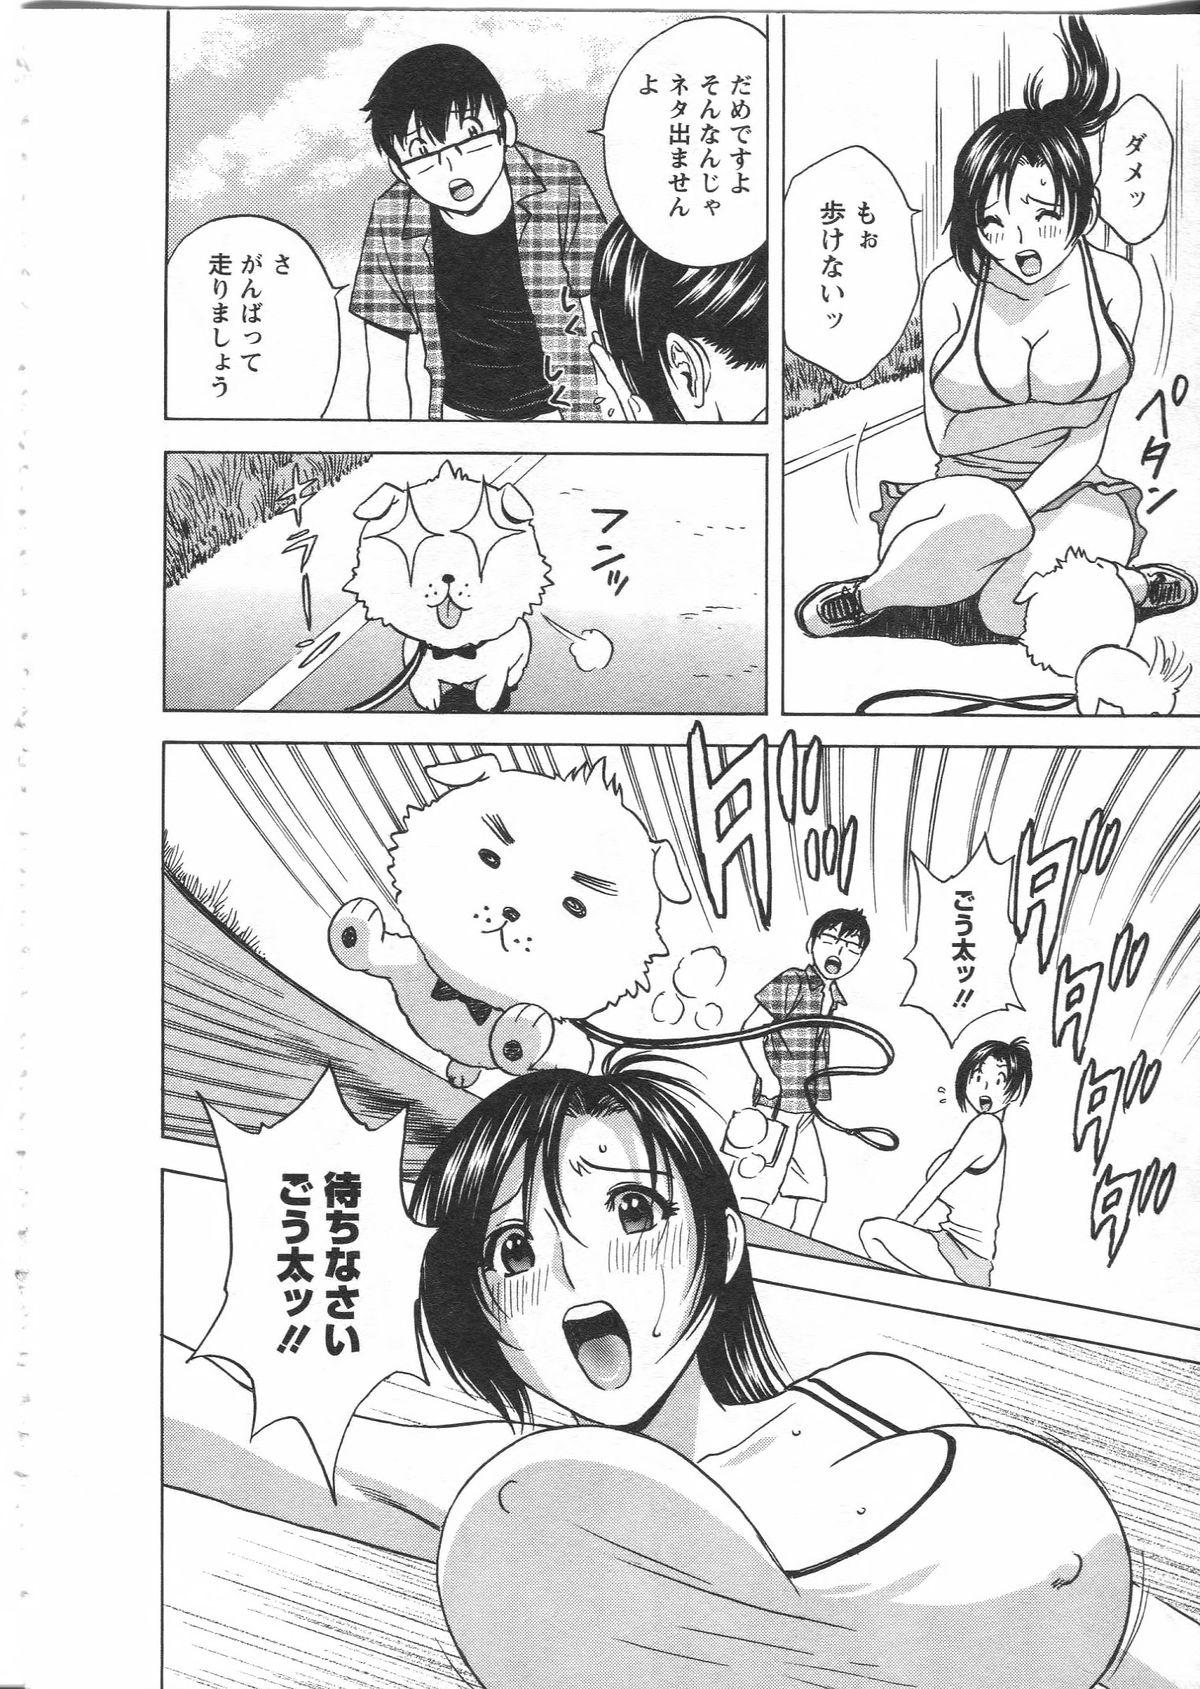 Manga no youna Hitozuma to no Hibi - Days with Married Women such as Comics. 141